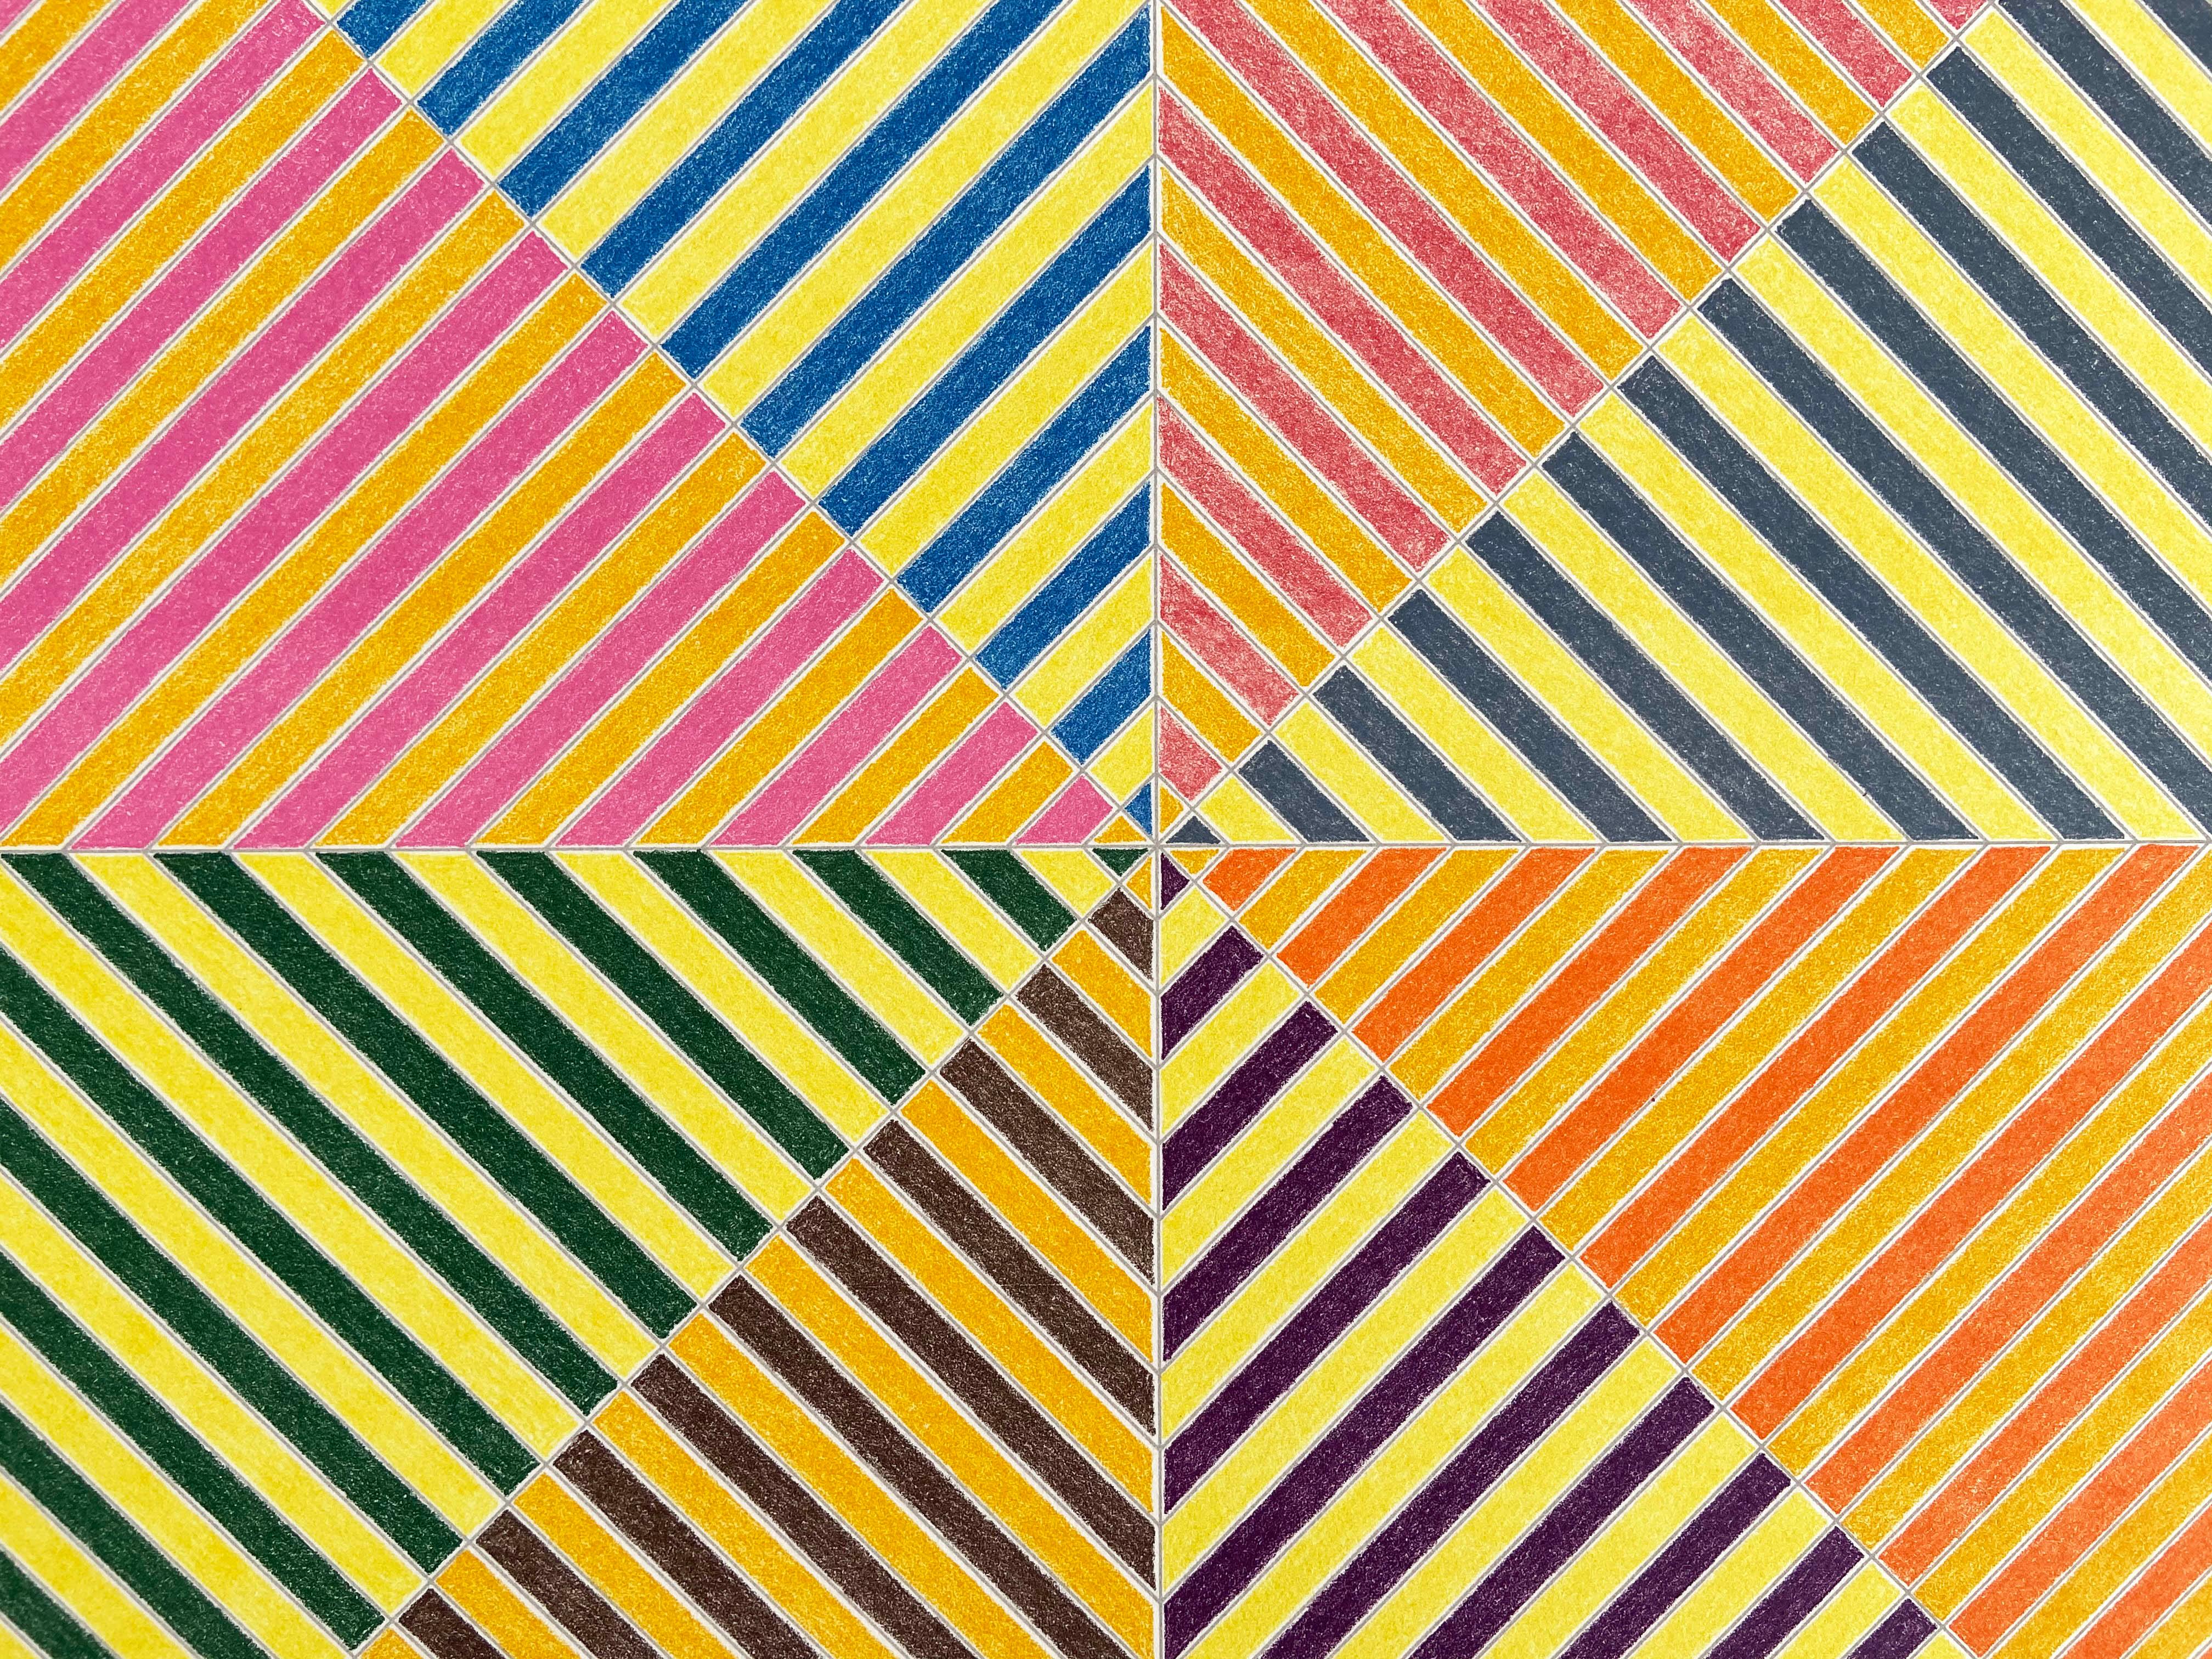 Sidi Ifni, Sidi Ifni (from Hommage à Picasso), Abstract Geometric, Minimalism - Print by Frank Stella